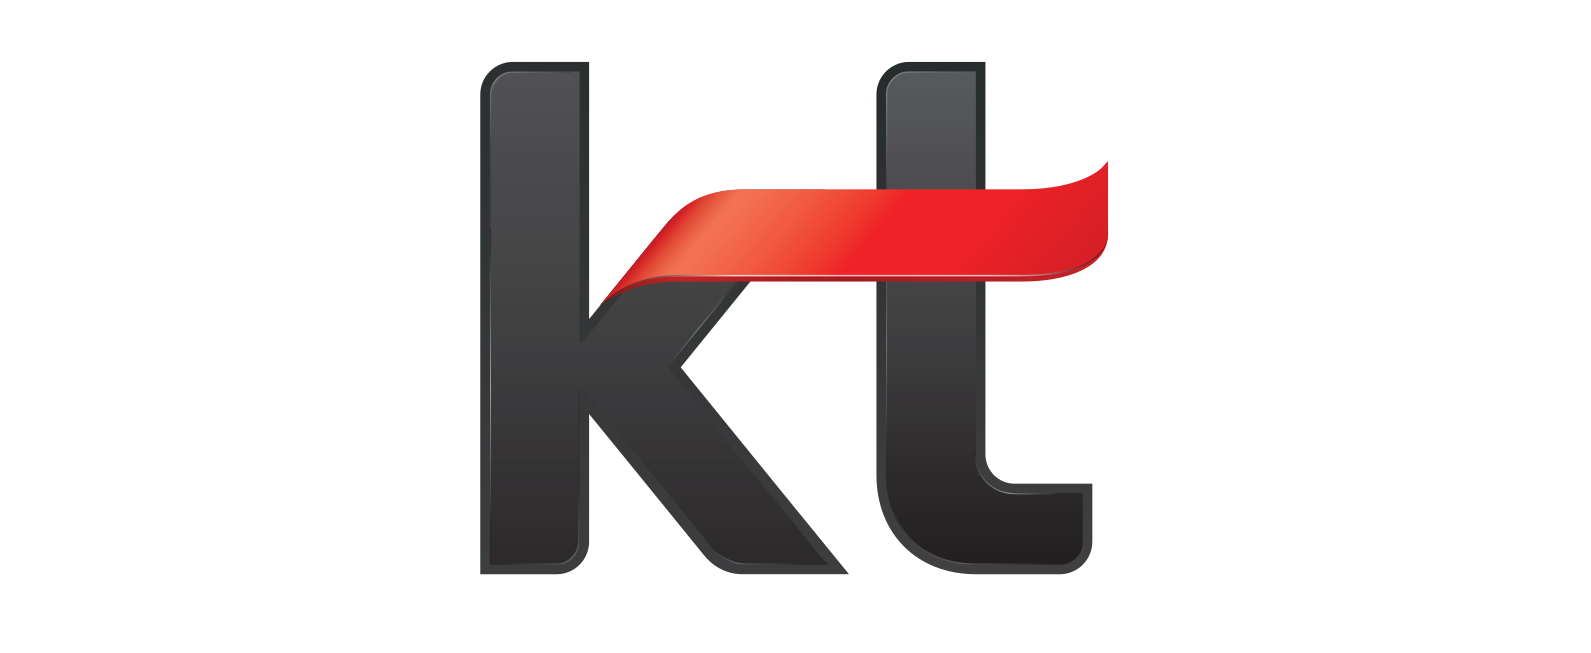 Korea Telecom logo